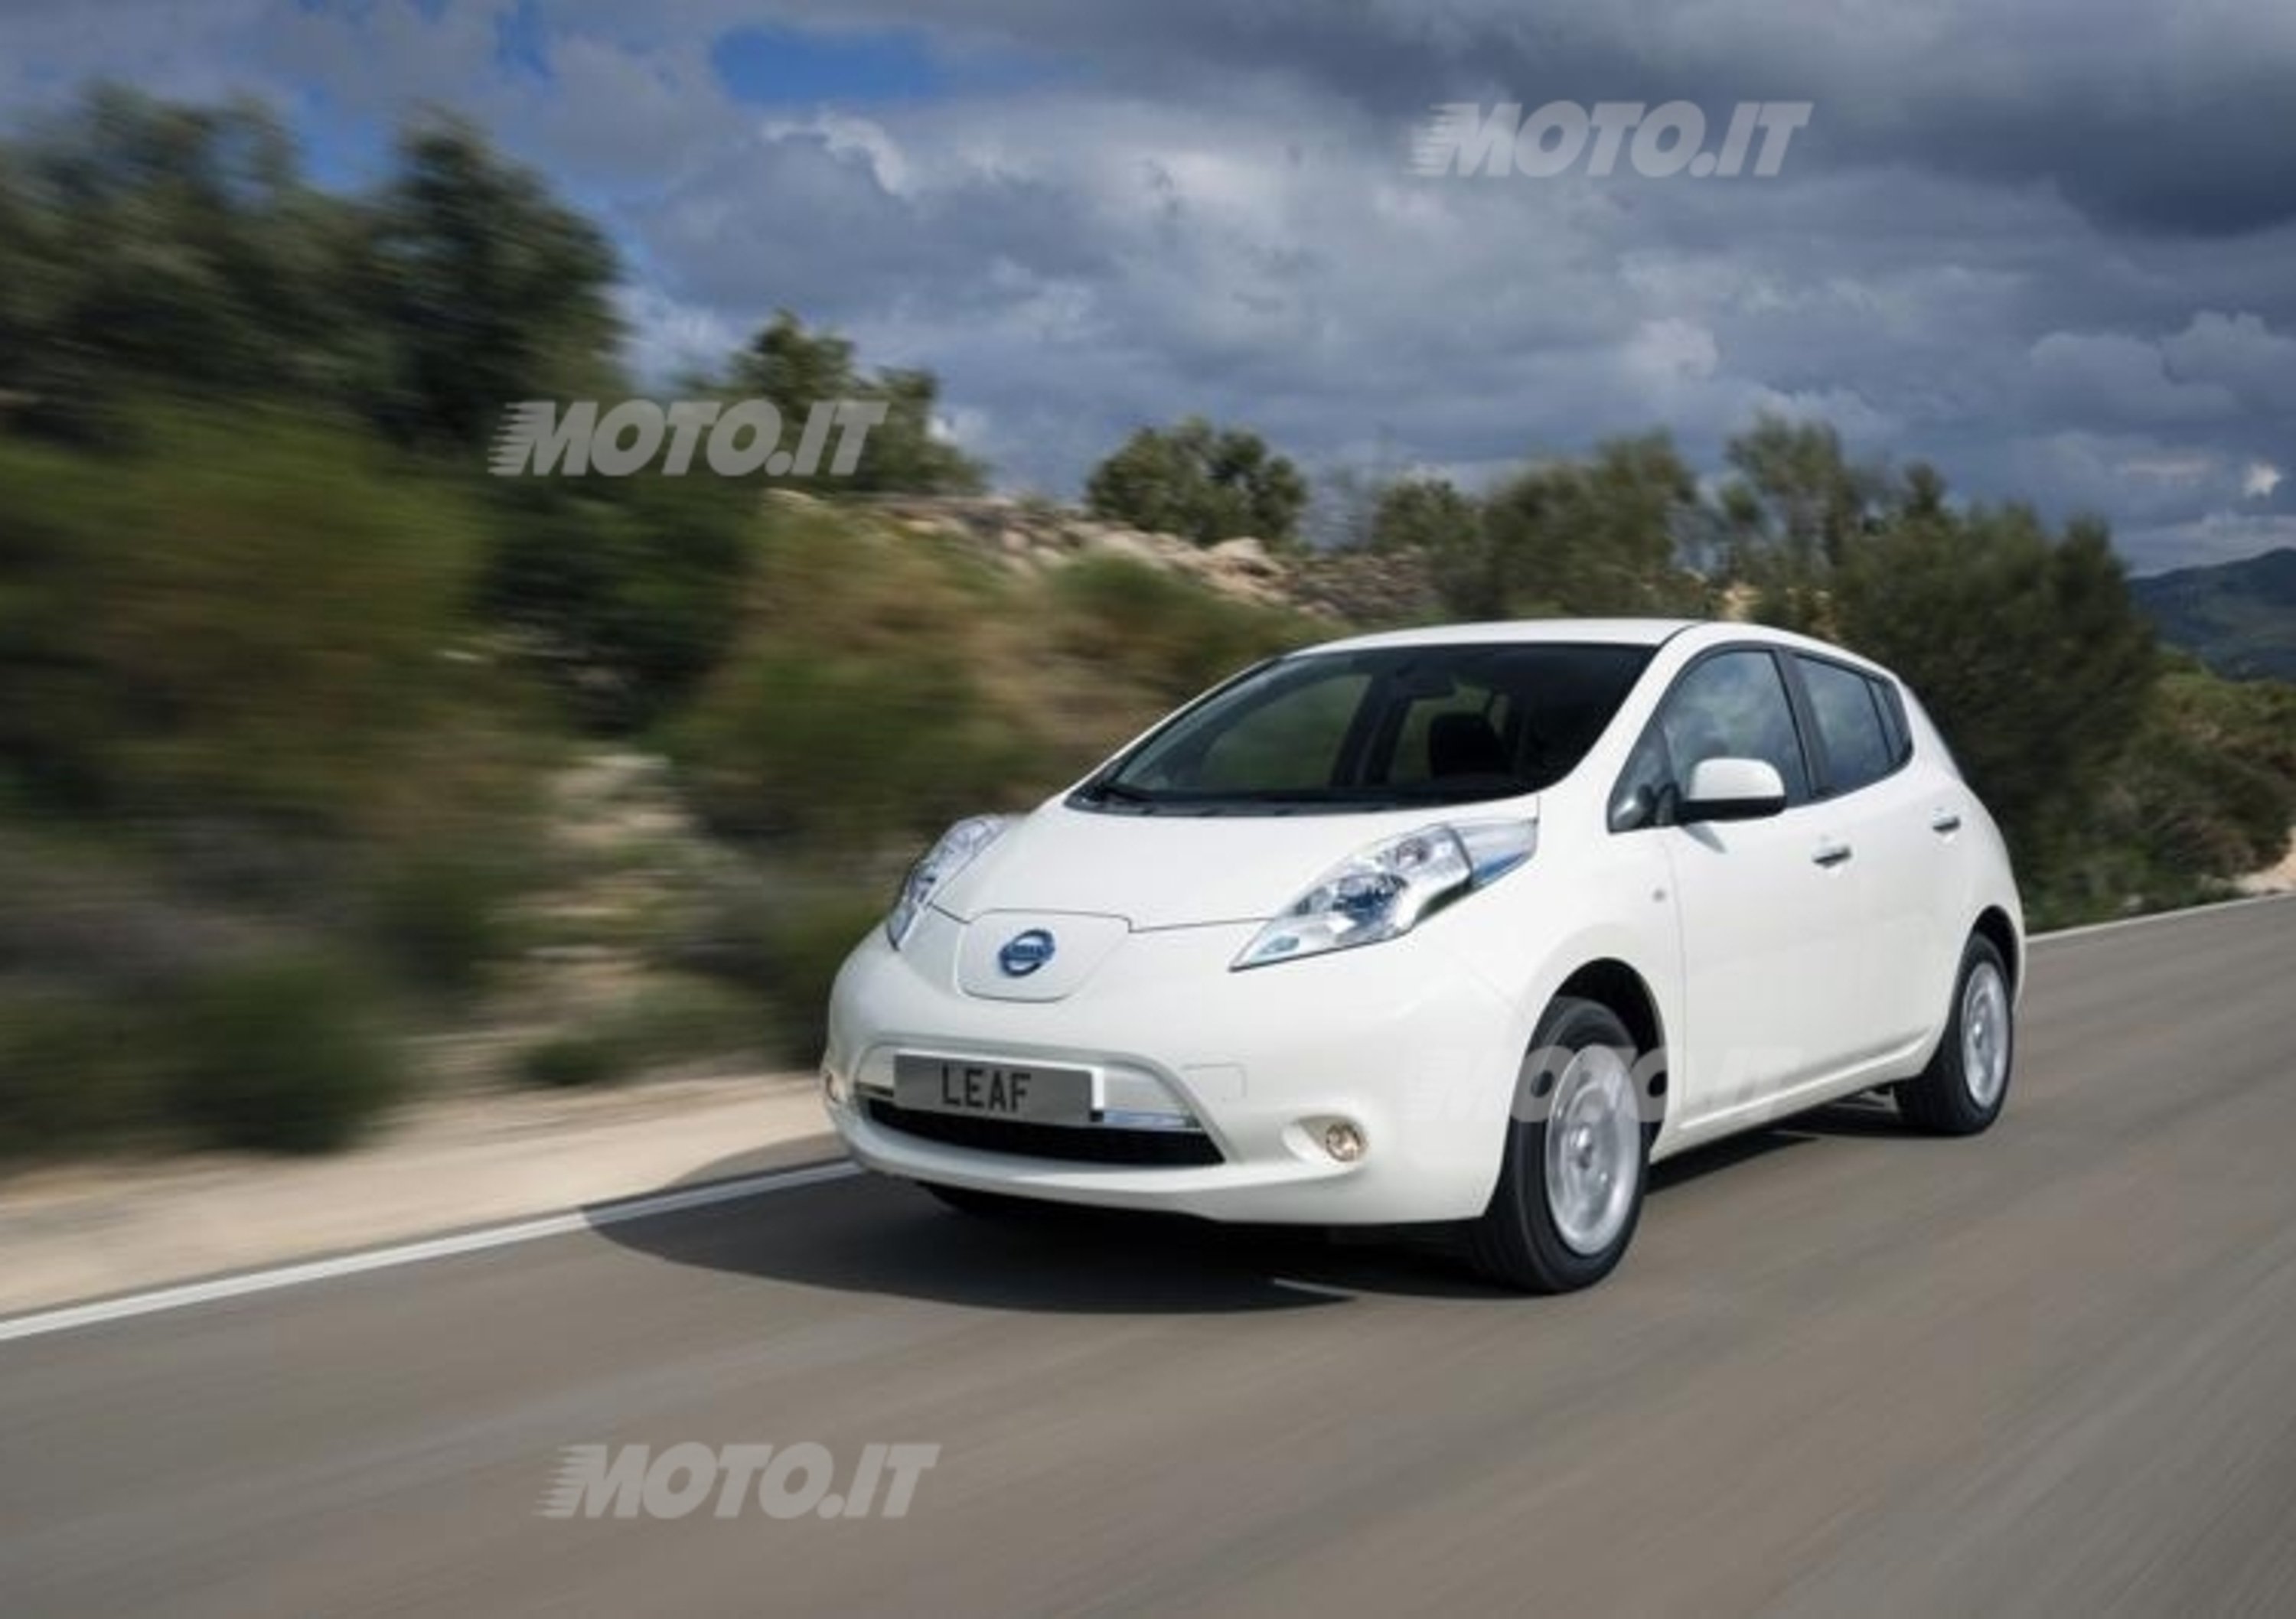 Nissan premiata per la riduzione del CO2